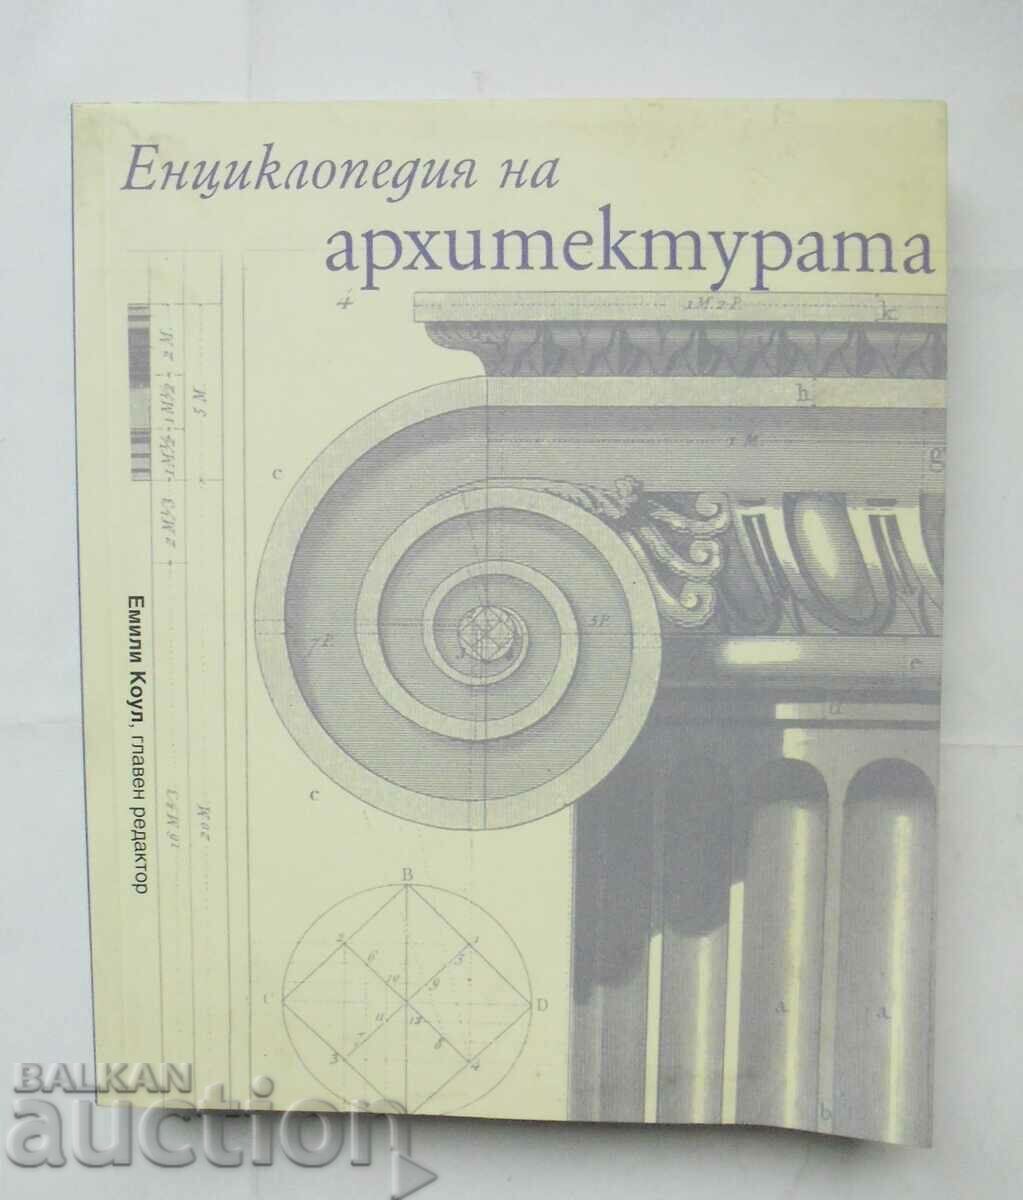 Encyclopedia of Architecture - Emily Cole et al. 2008